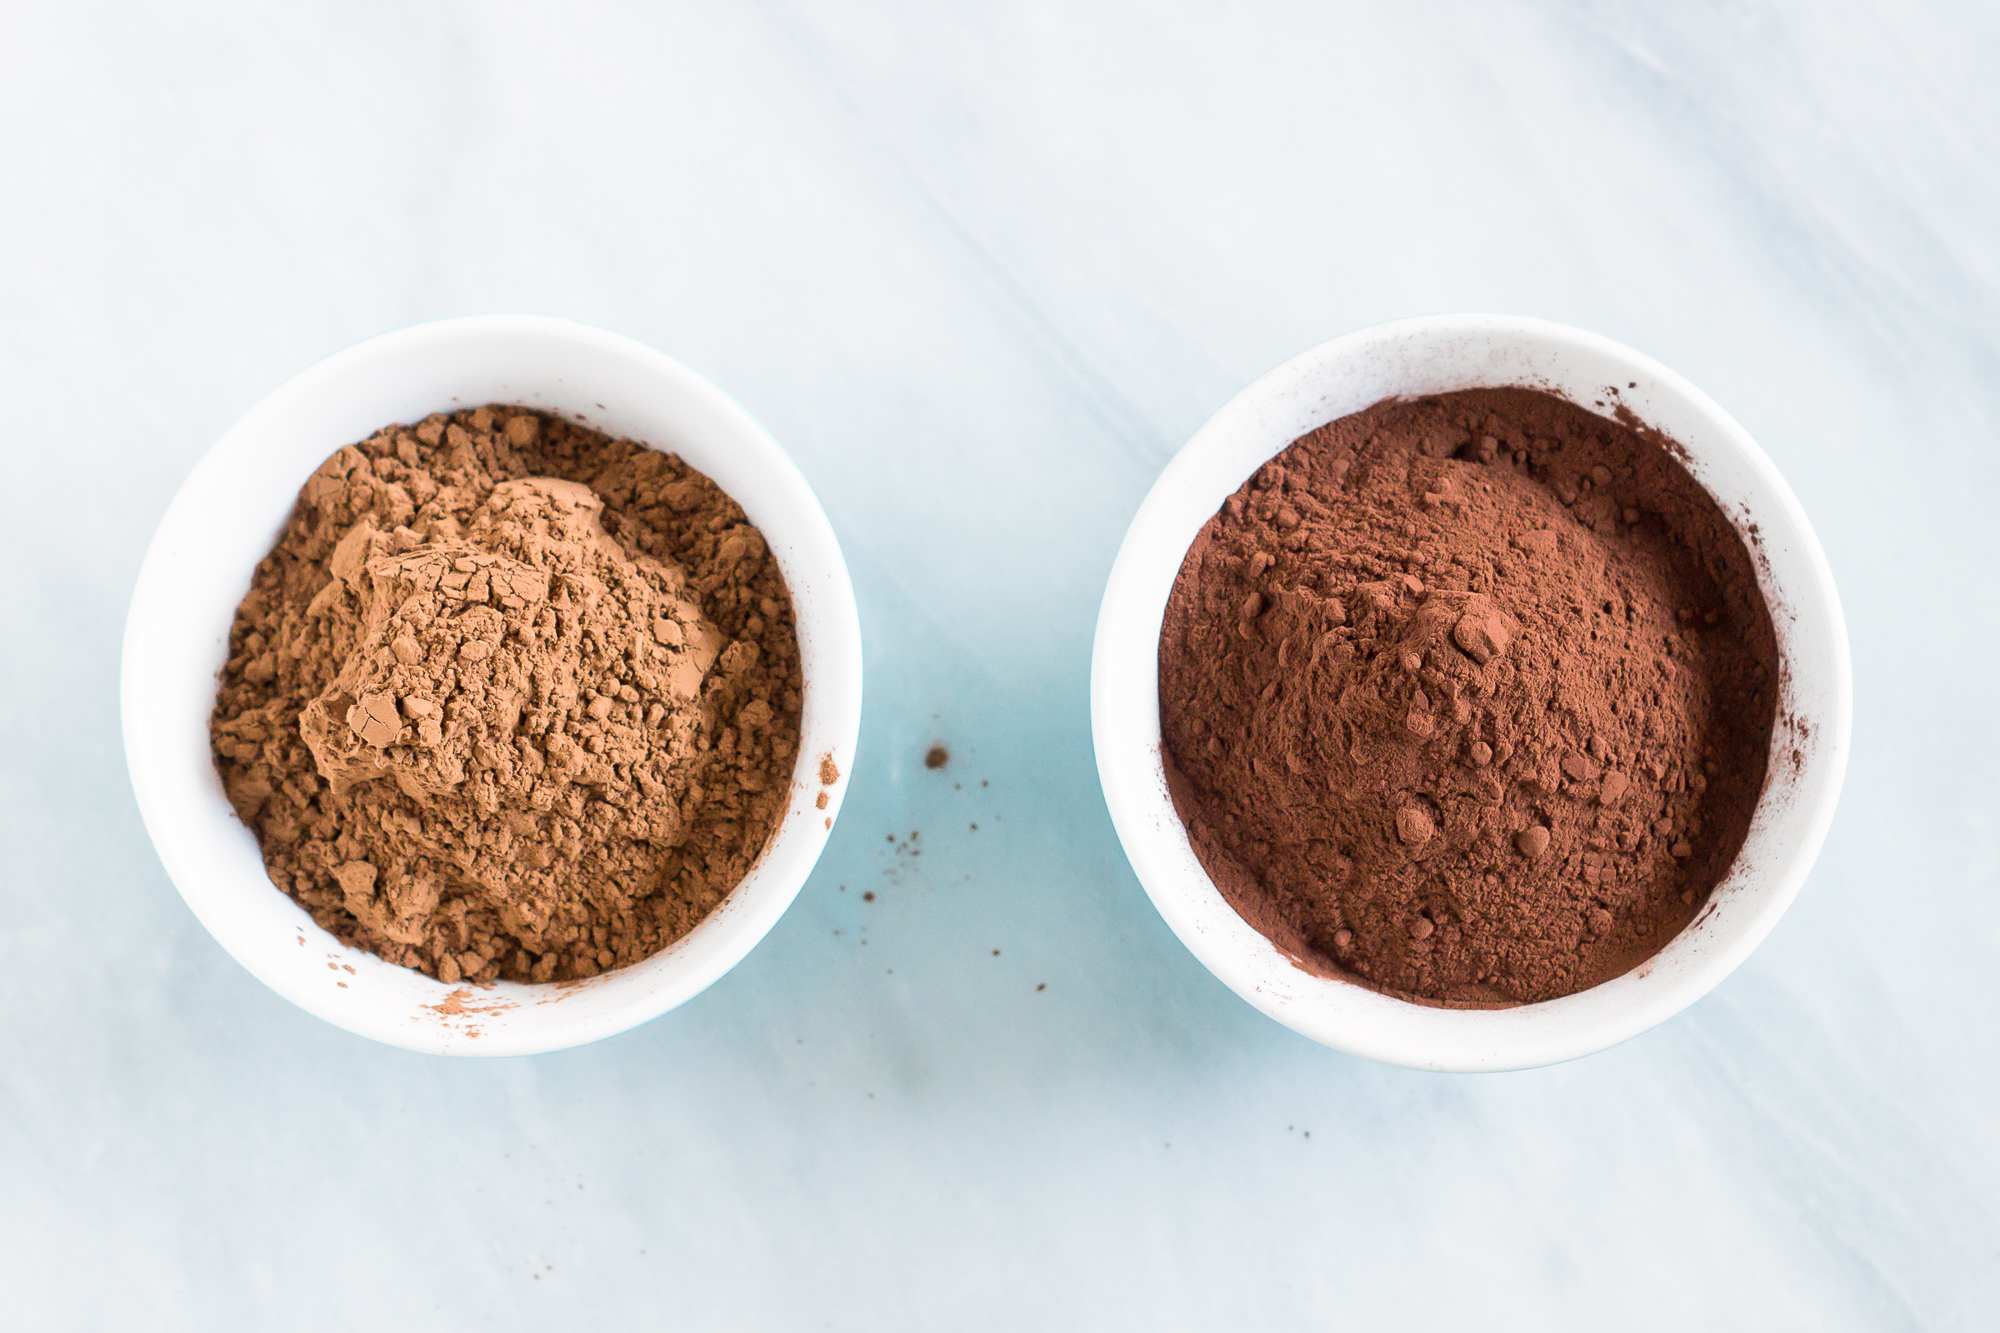 неалкализированный (слева) и алкализированный (справа) какао-порошки